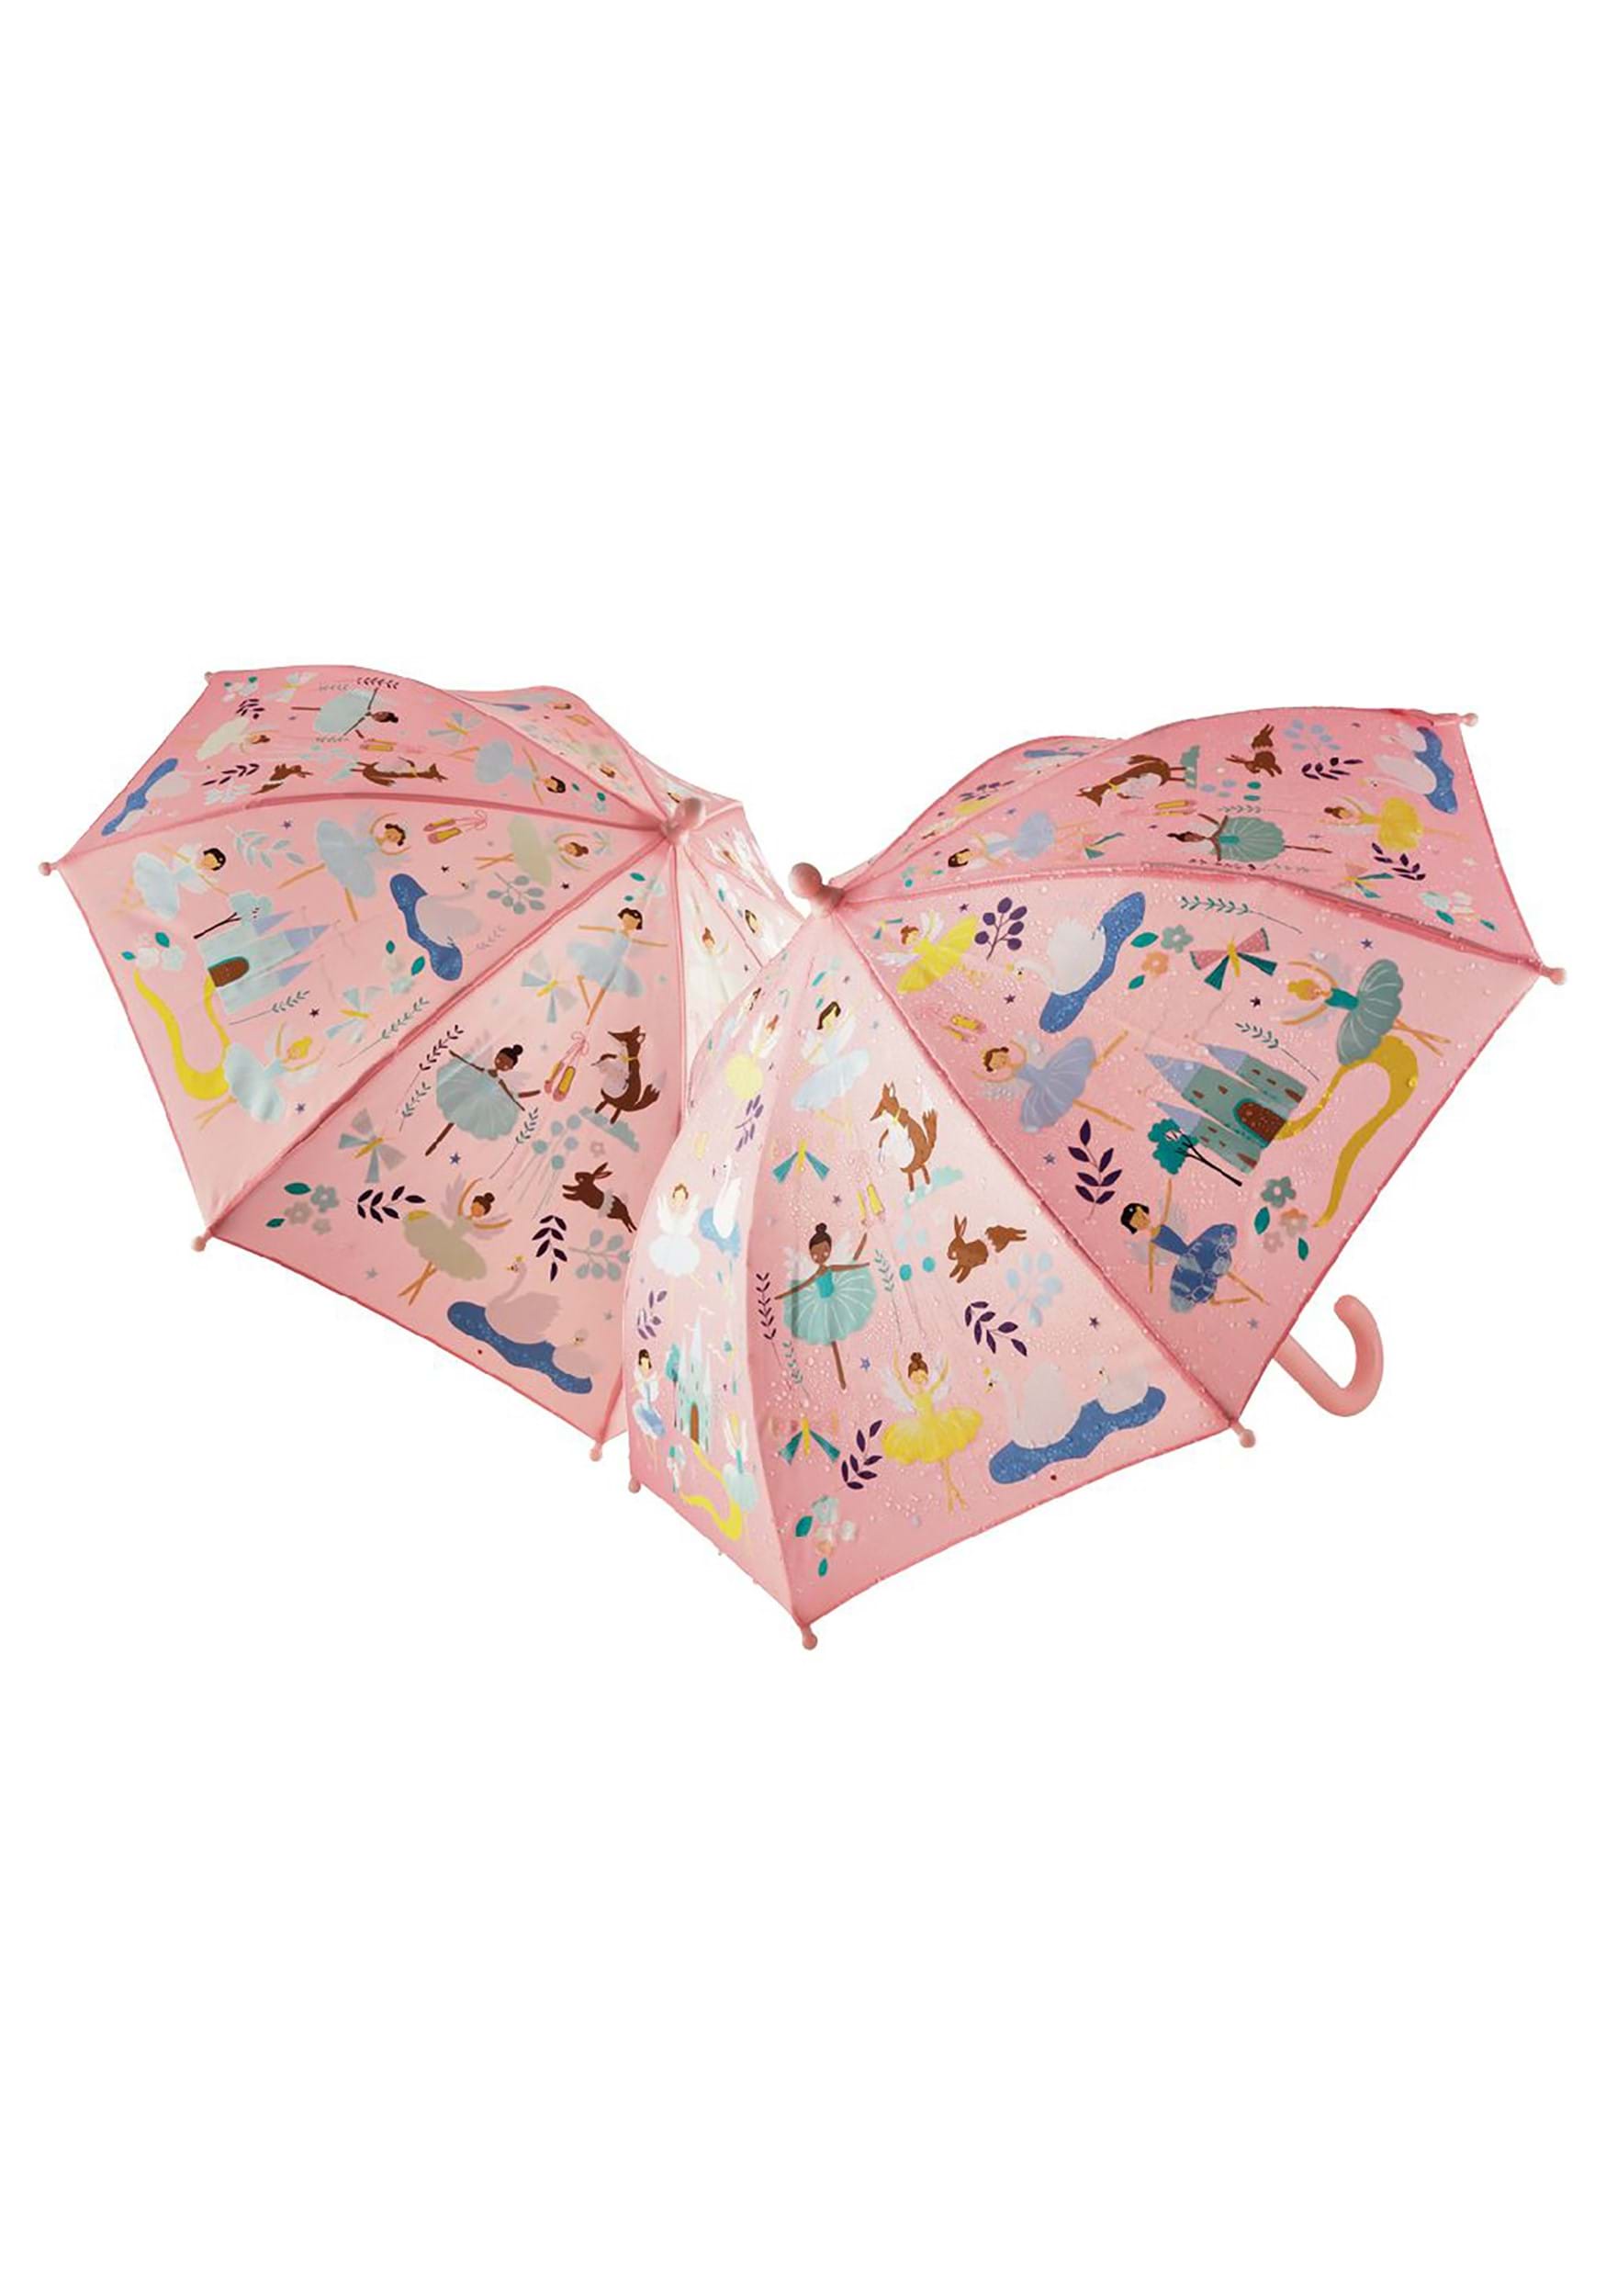 Enchanted Transparent Umbrella Accessory